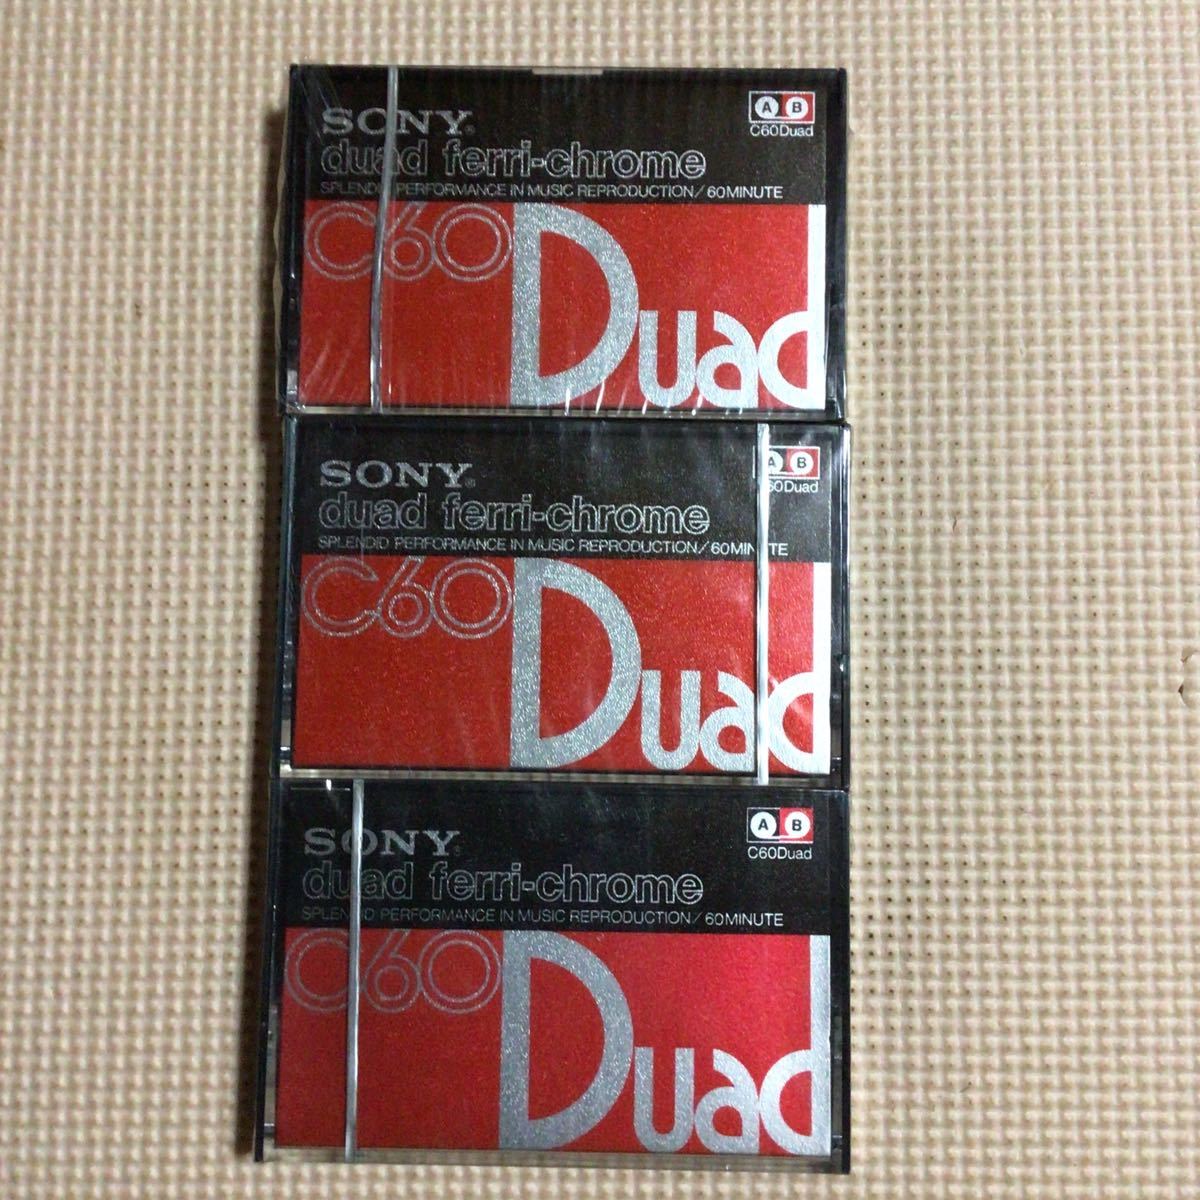 SONY DUAD 60 ferri-chrome カセットテープ3本セット【未開封新品】★_画像1